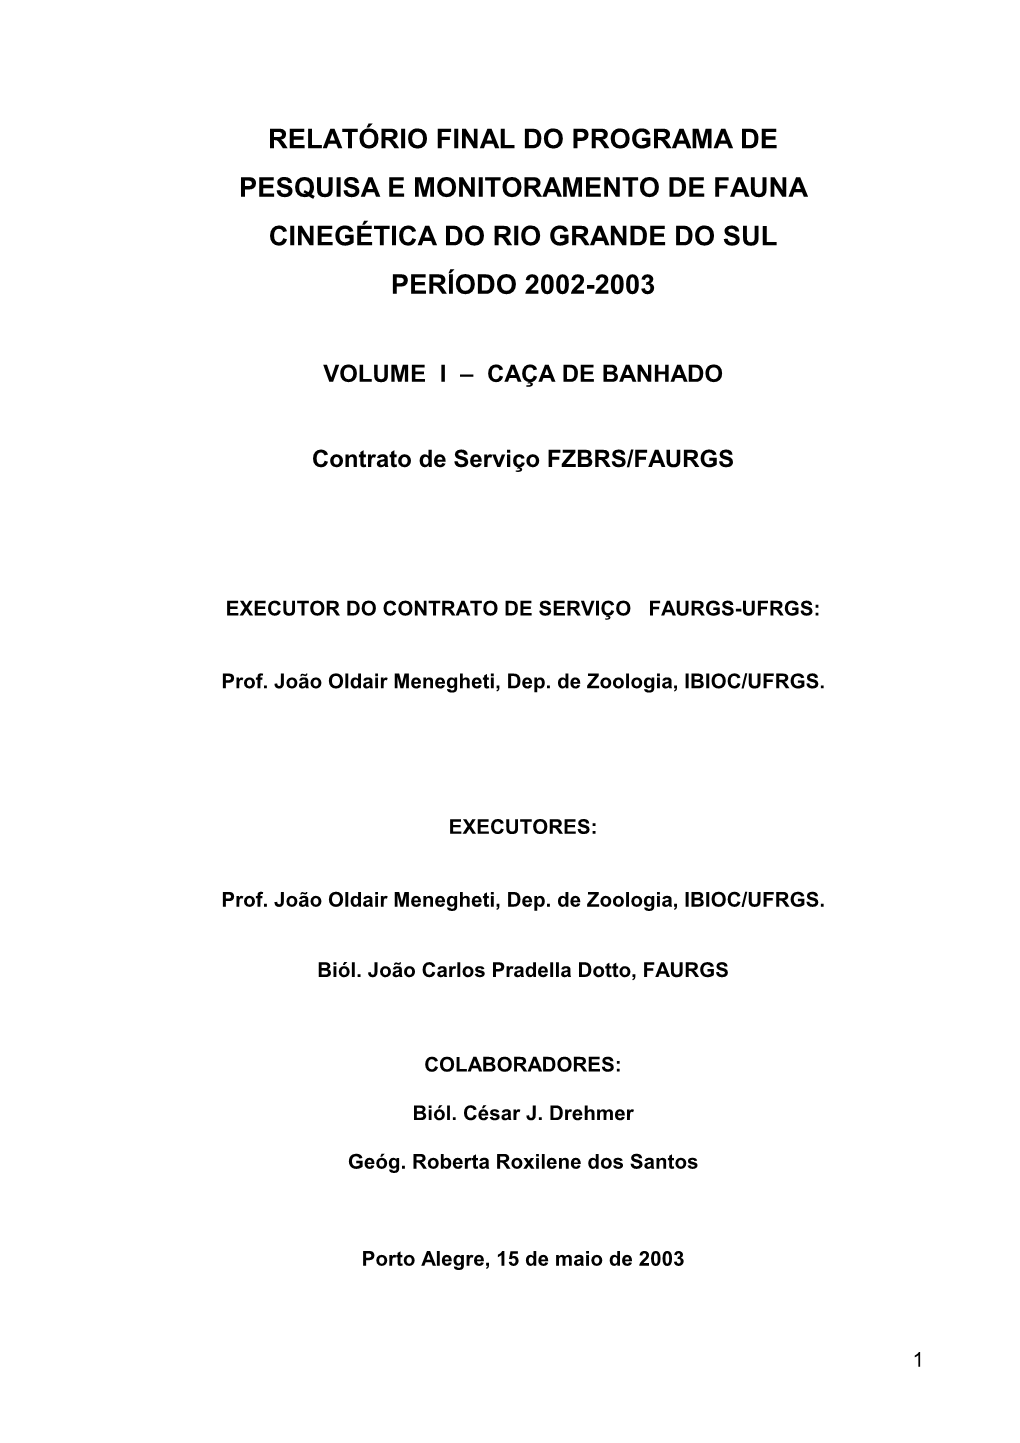 Relatório Final Do Programa De Pesquisa E Monitoramento De Fauna Cinegética Do Rio Grande Do Sul Período 2002-2003